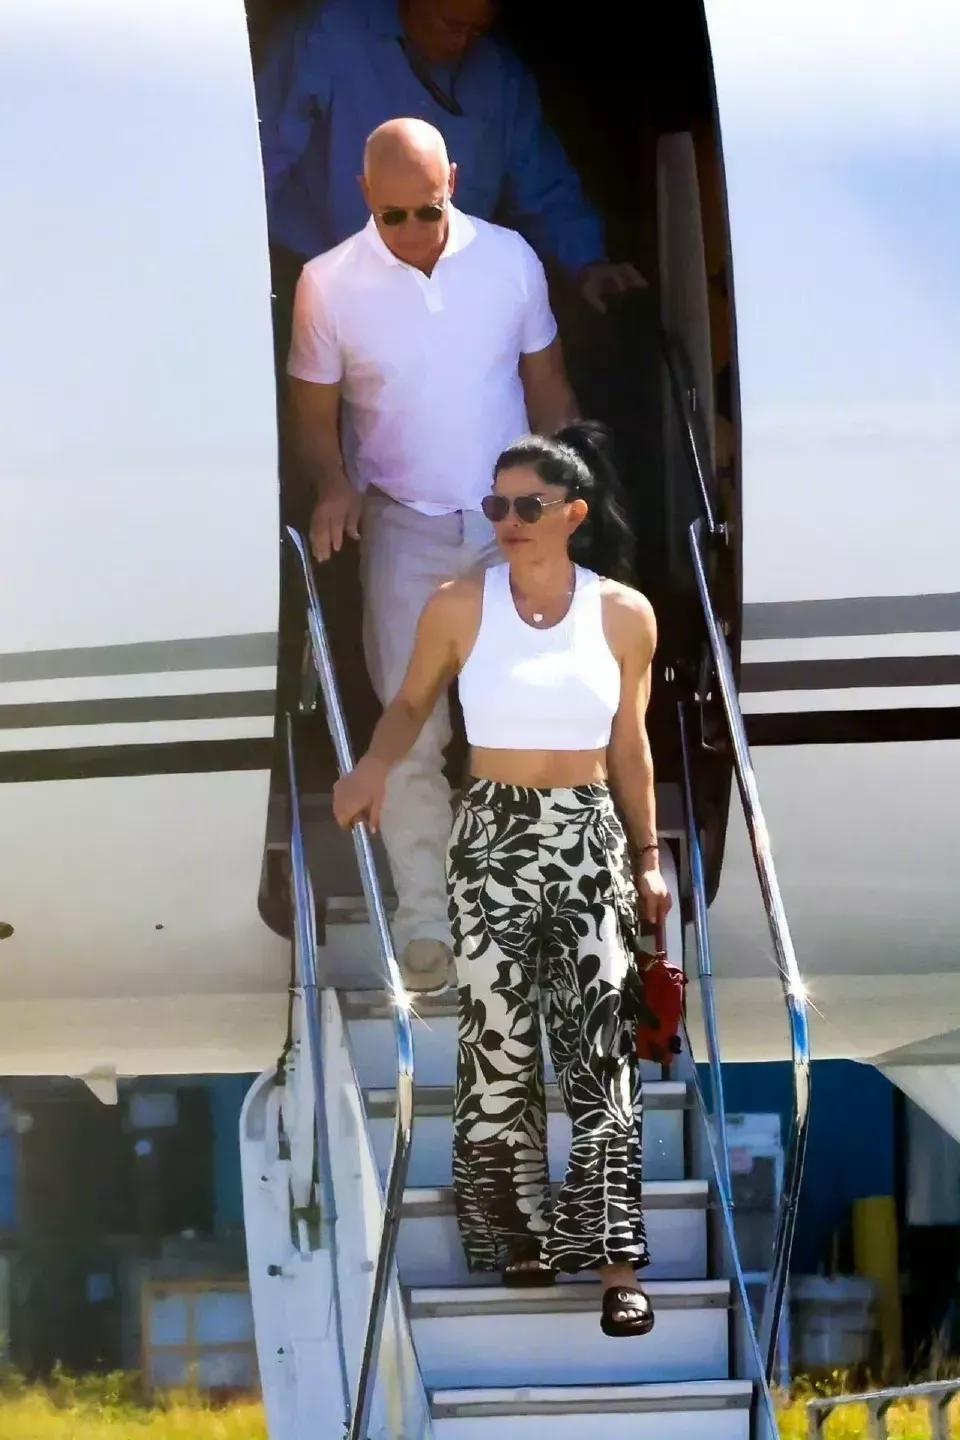 贝佐斯和女友桑切斯抵达迈阿密，俩人手牵手太温馨，桑切斯短衫配花裤挺时髦！

贝索(11)